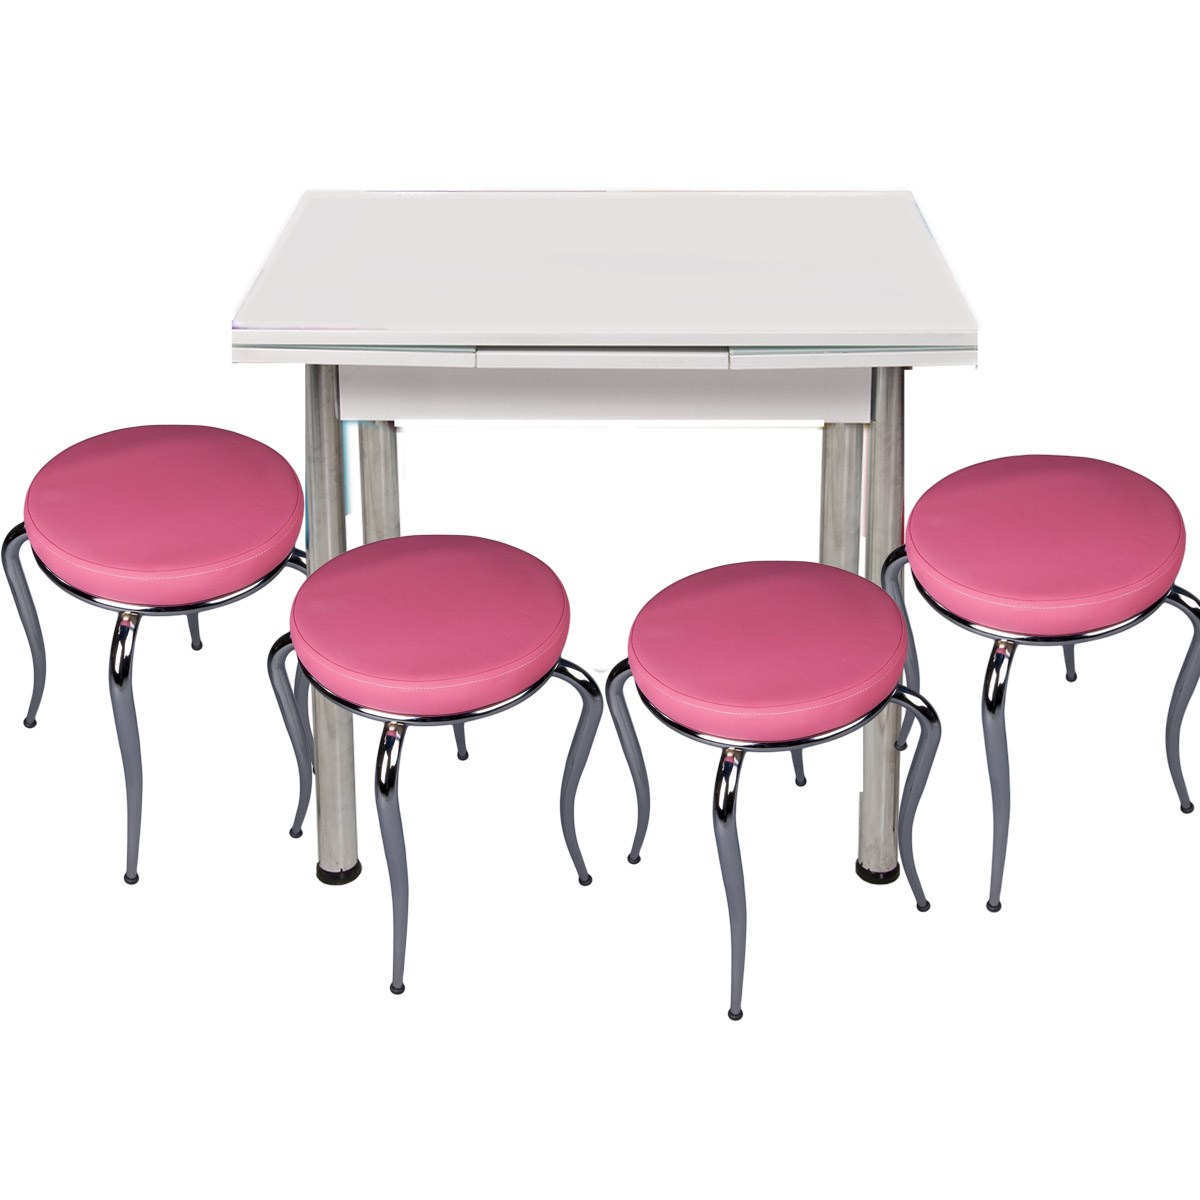 Beyaz Yandan Açılır Küçük Boyut Masa ve 4 Pembe Tabure Takımı | Kristal Masa  & Sandalye